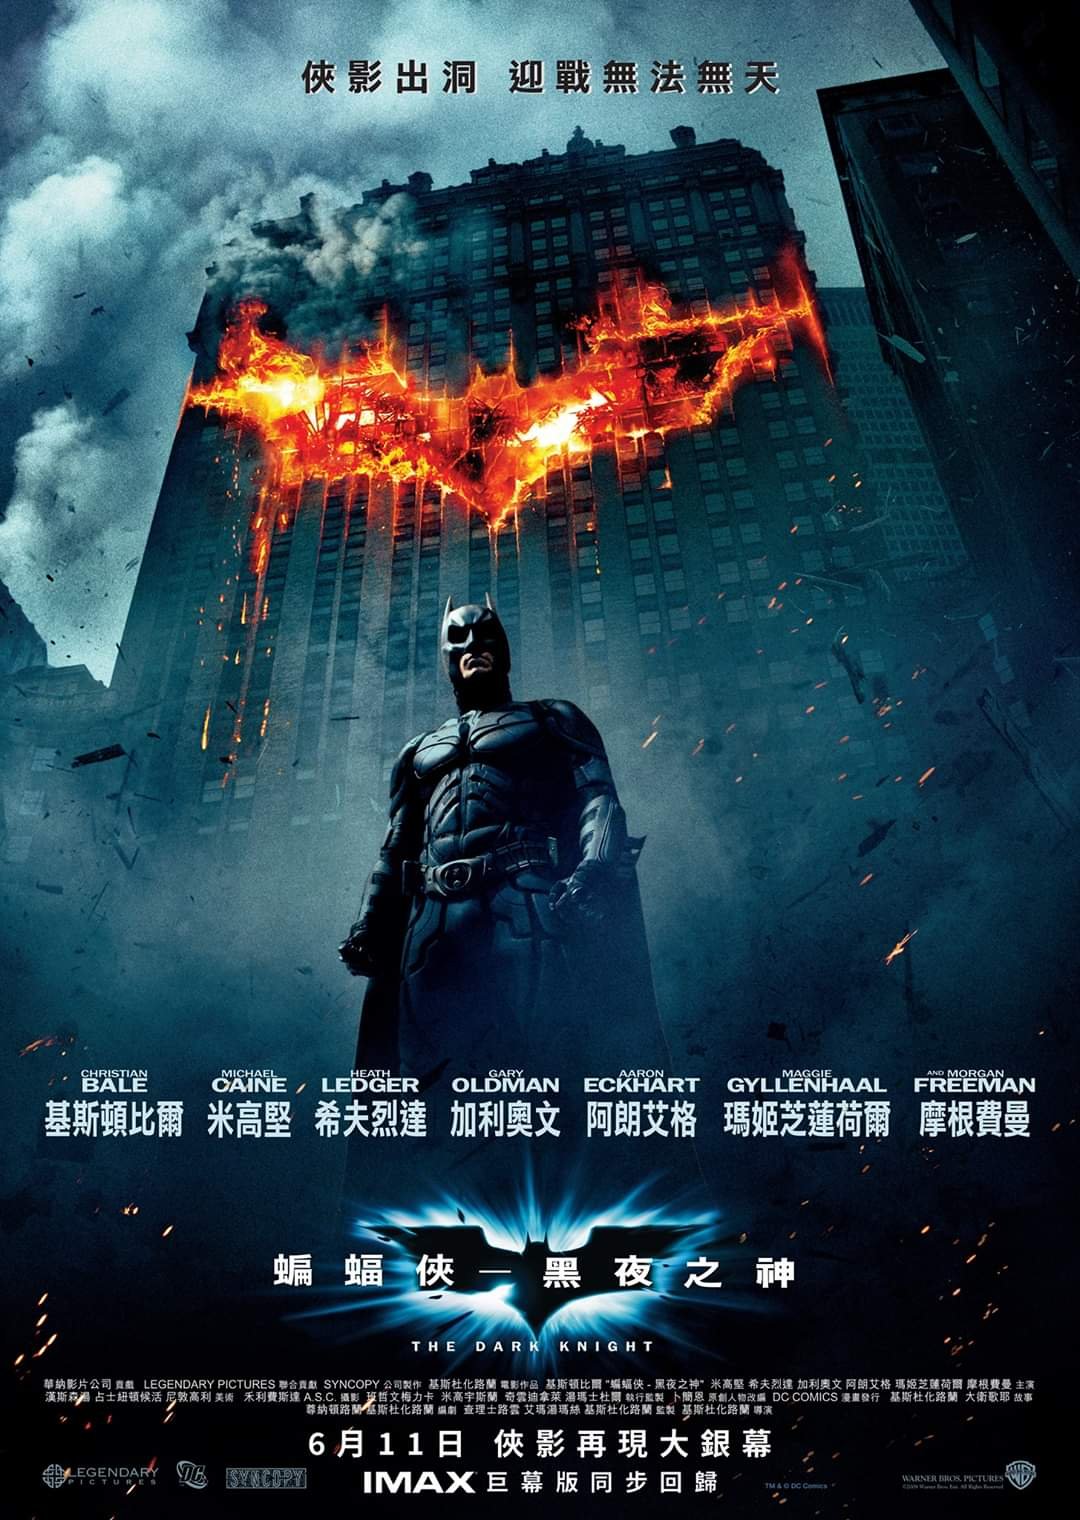 蝙蝠俠 – 黑夜之神 (IMAX版)電影圖片 - FB_IMG_1589805677103_1589815887.jpg